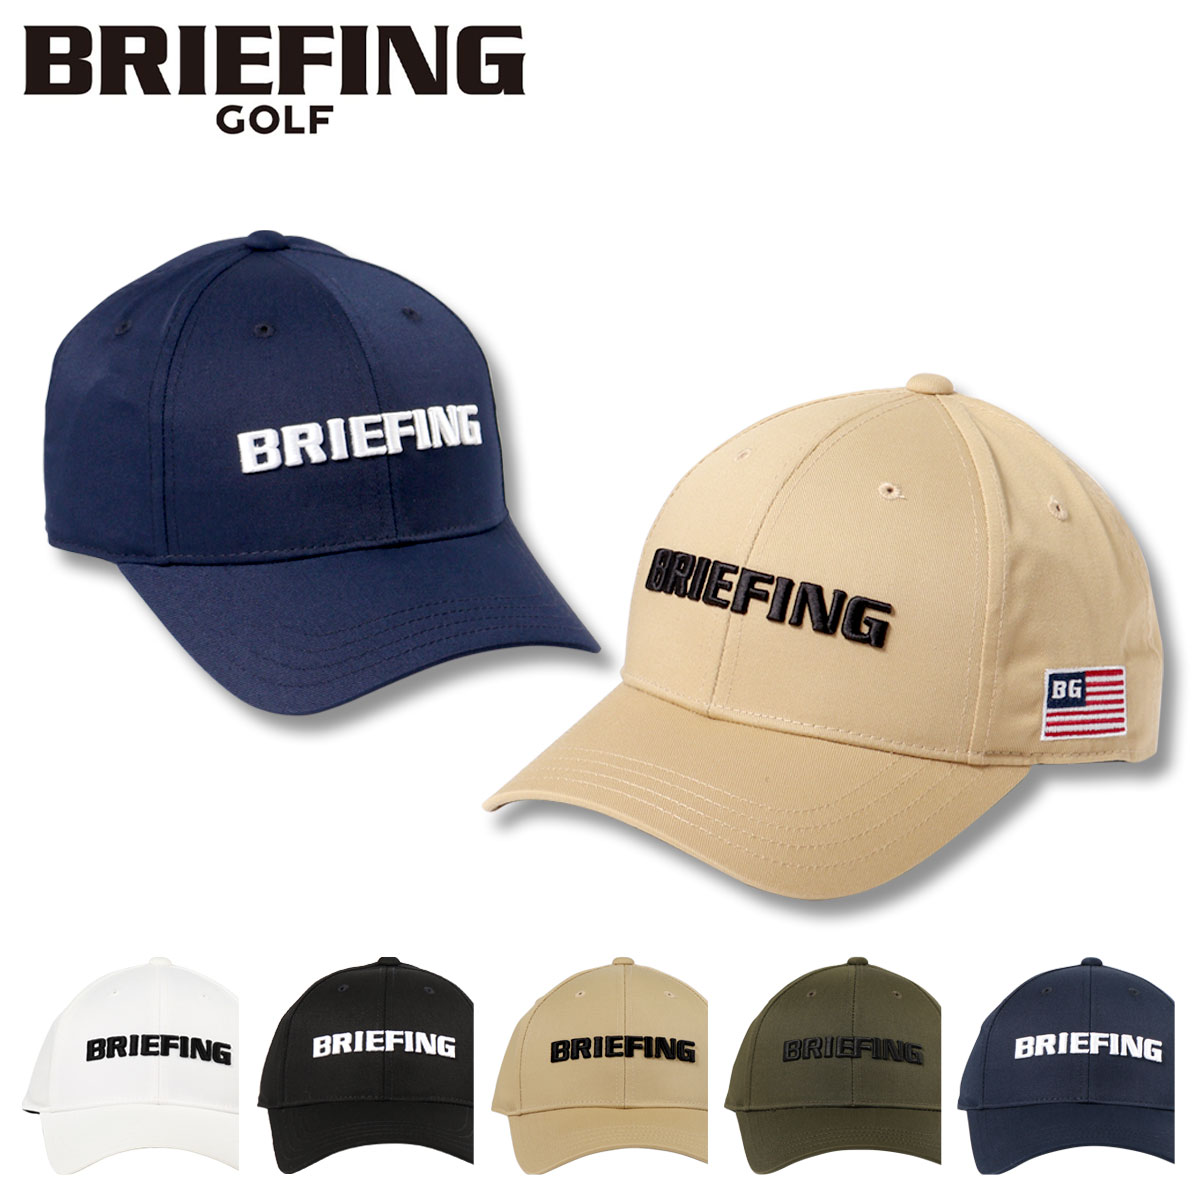 ブリーフィング ゴルフ キャップ 帽子 サイズ調節可能 メンズ BRG223M56 BRIEFING GOLF 帽子 スポーツ アウトドア MS BASIC CAP 即日発送 DL10